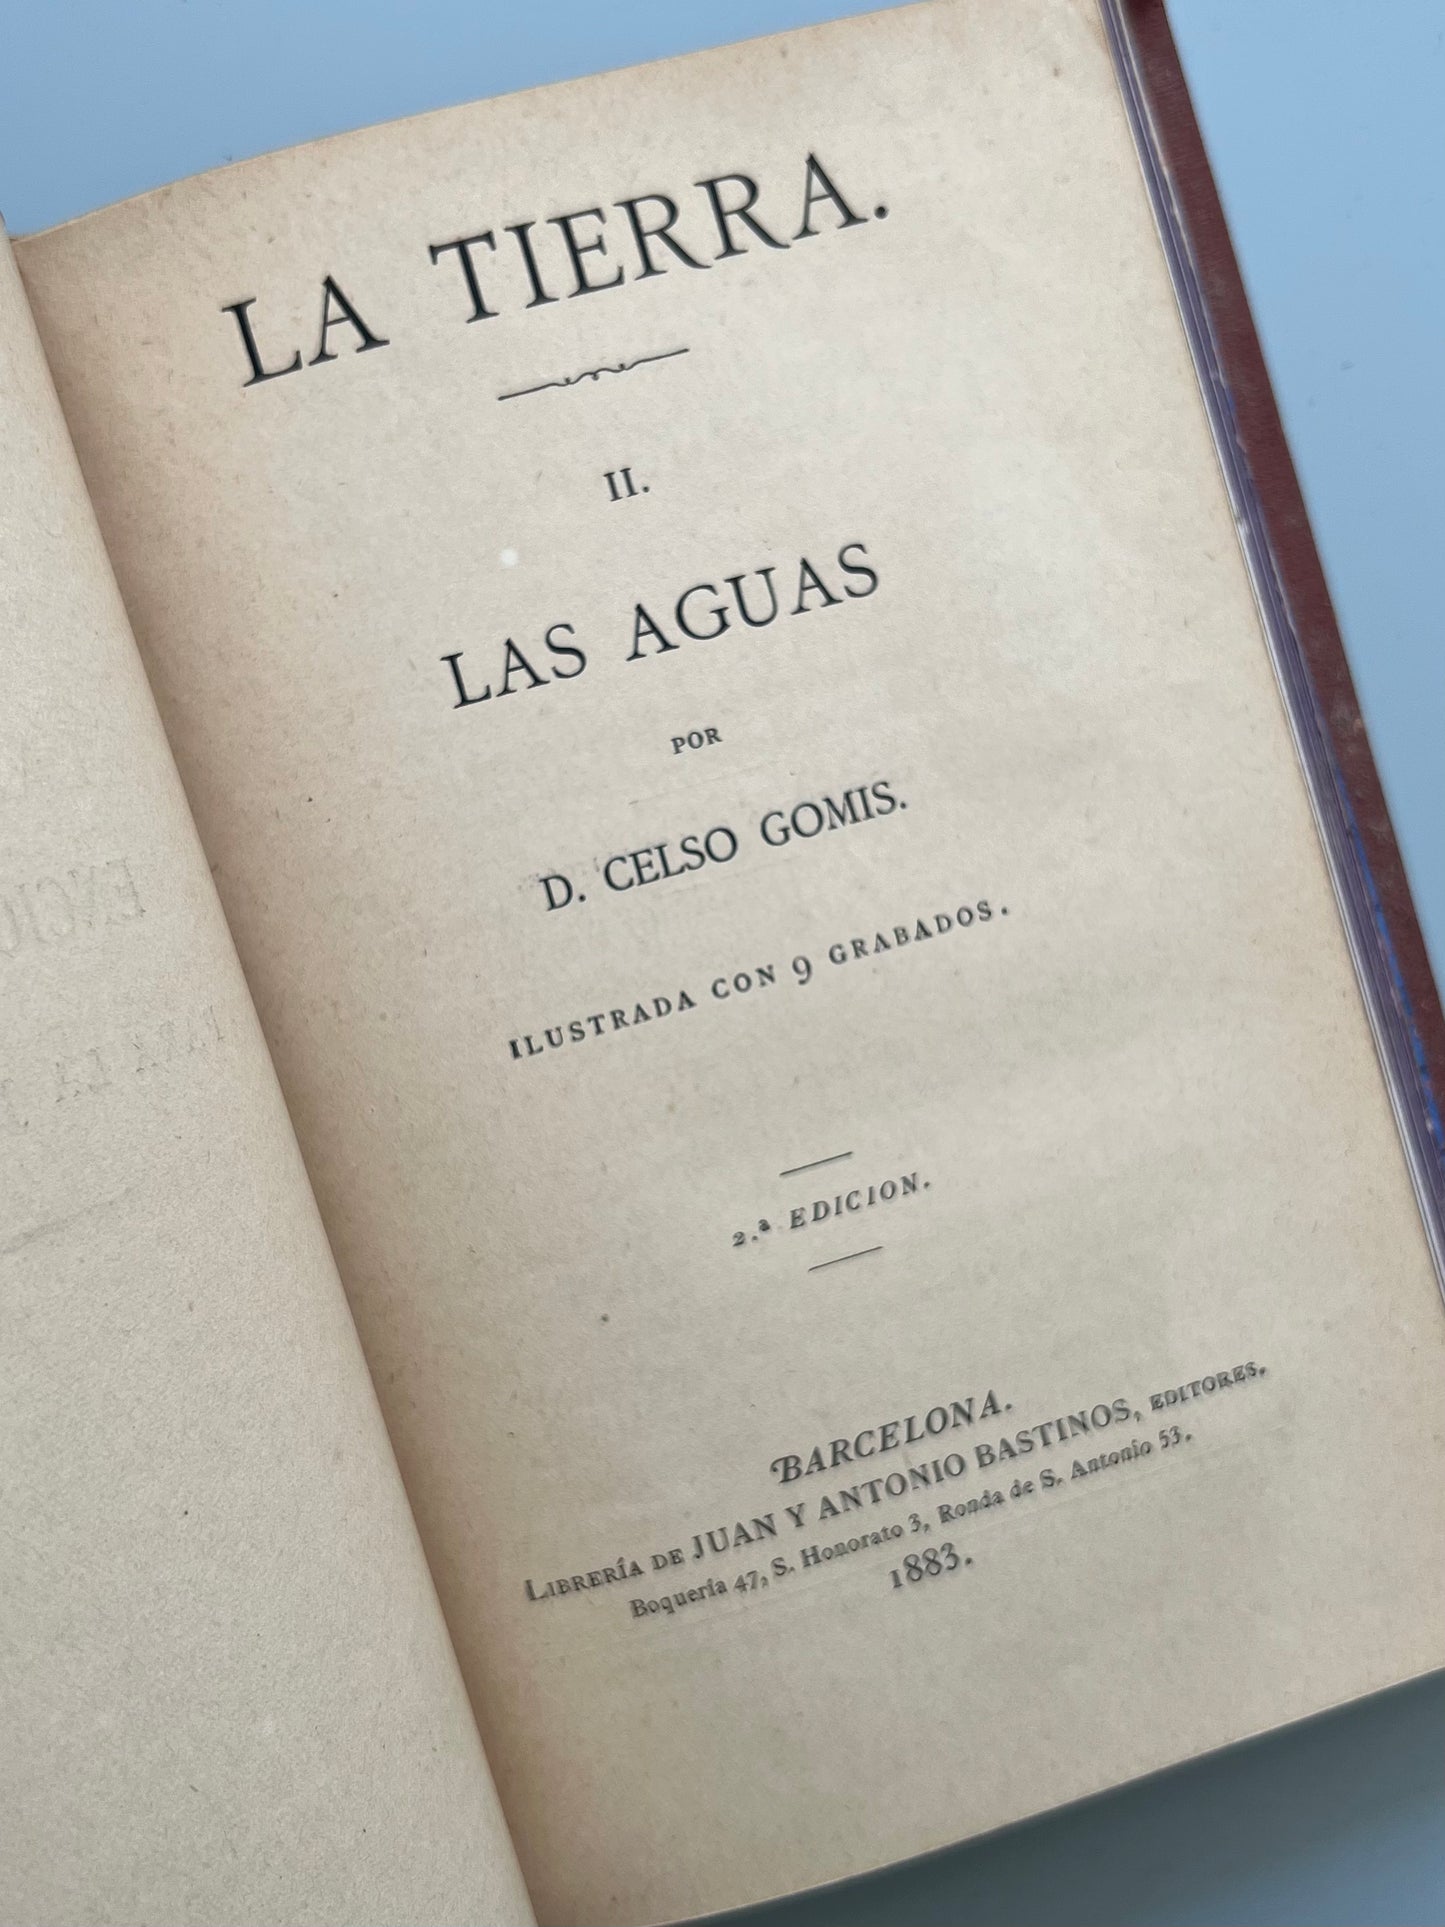 La tierra, Celso Gomis - Juan y Antonio Bastinos, 1877-1883